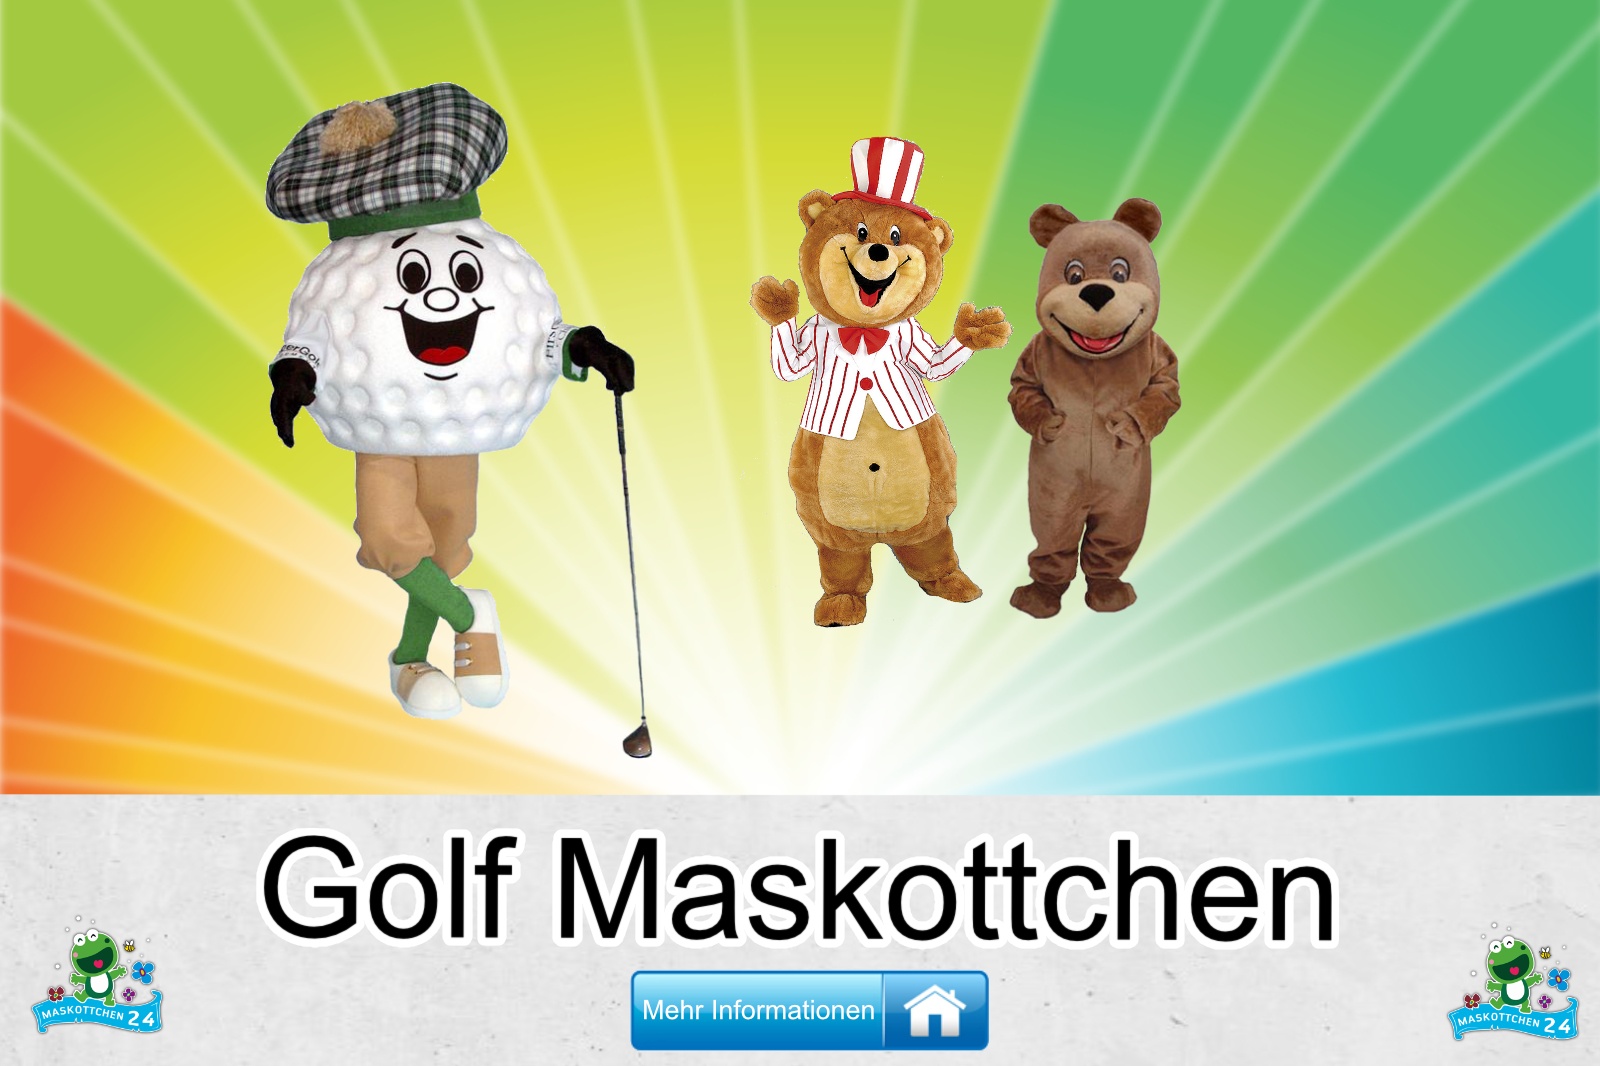 Golf Maskottchen Kostüm kaufen